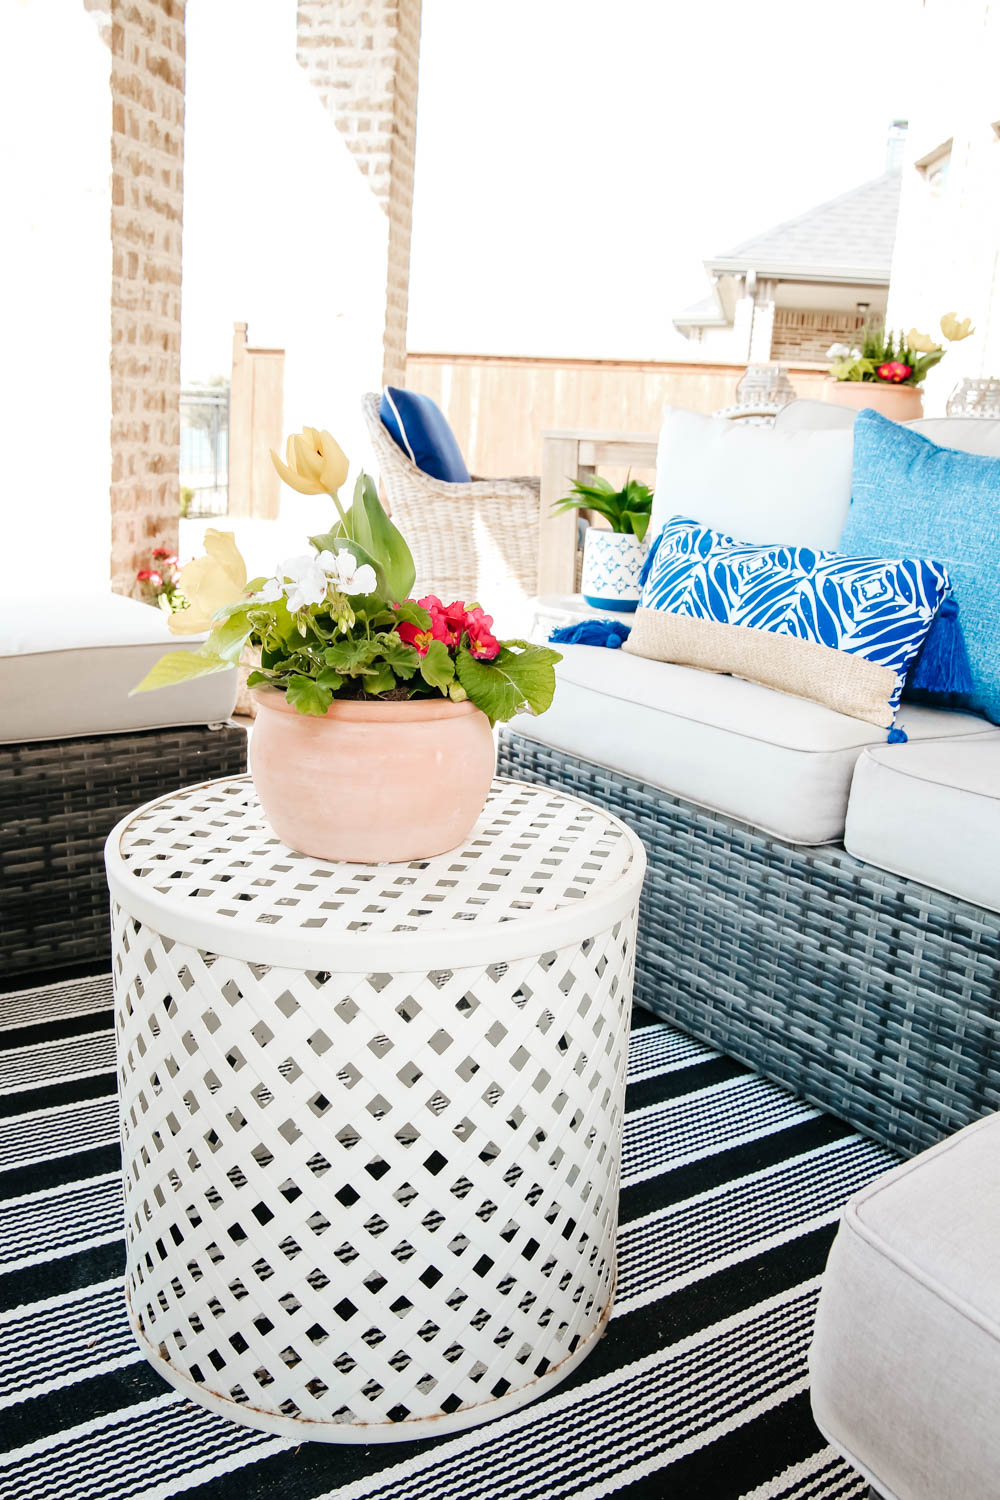 terra cotta pot, white garden stool, sprig patio decor ideas. #ABlissfulNest #patio #outdoor #backyard